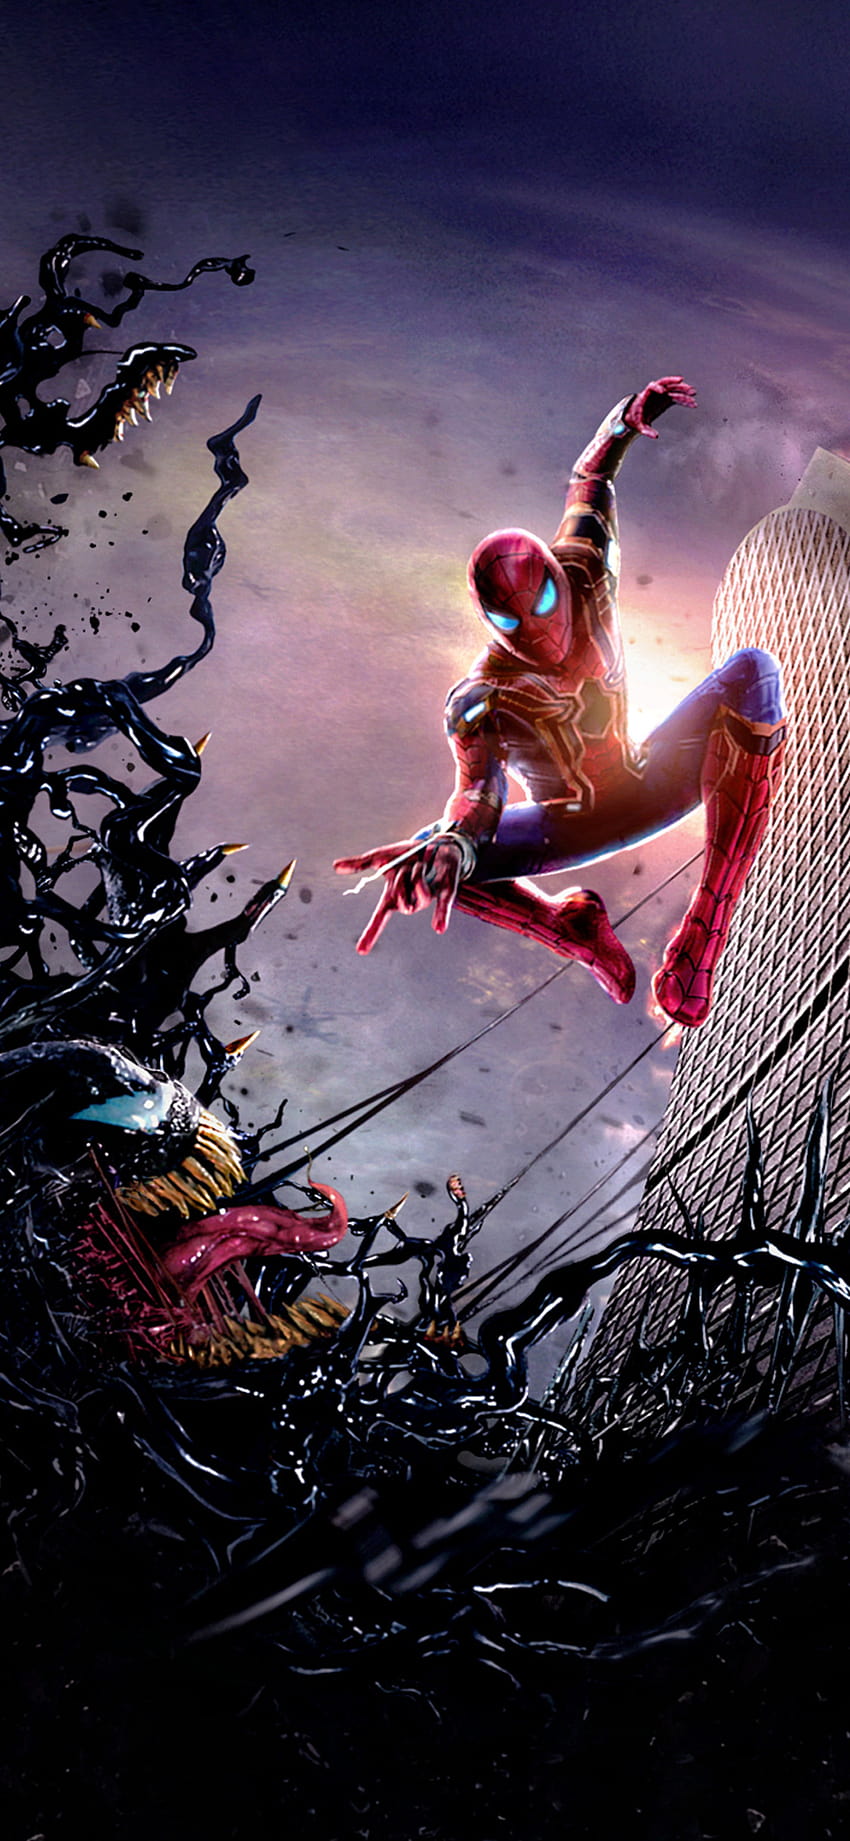 Carnage vs Venom SpiderMan 4K Wallpaper